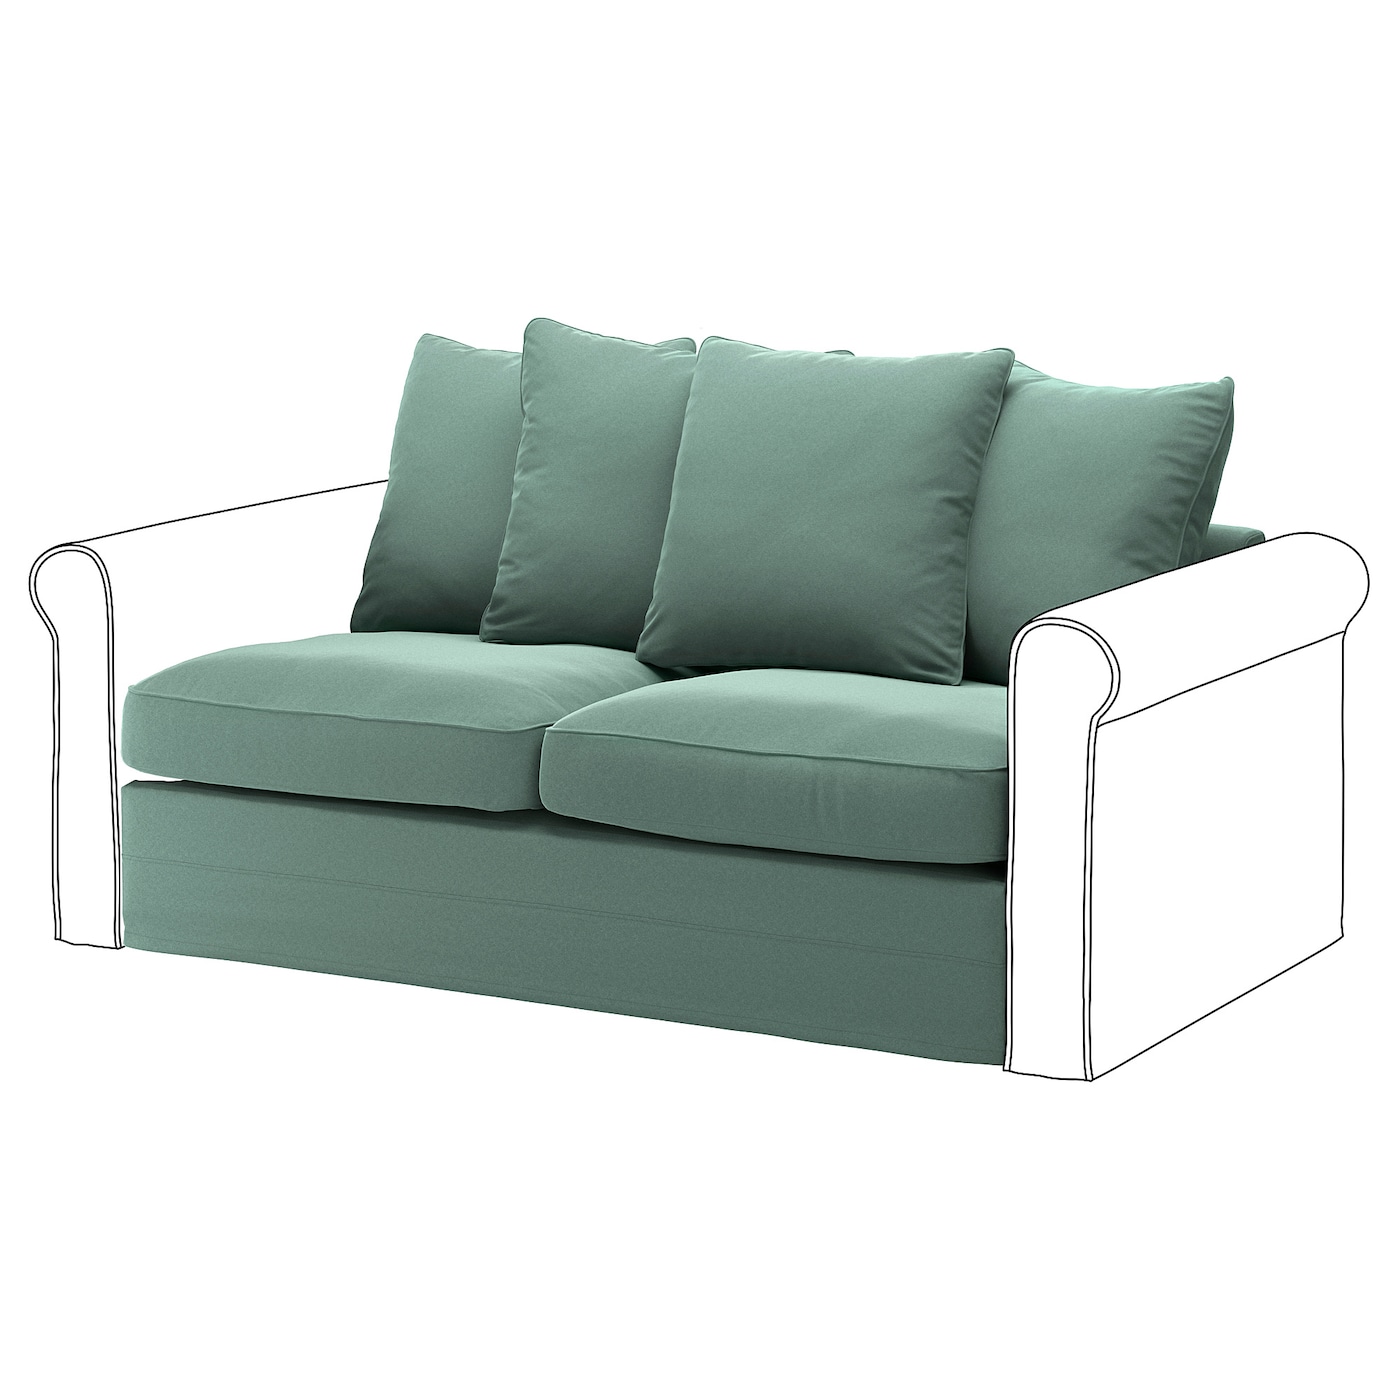 GRÖNLID 2er-Bettsofaelement  -  - Möbel Ideen für dein Zuhause von Home Trends. Möbel Trends von Social Media Influencer für dein Skandi Zuhause.